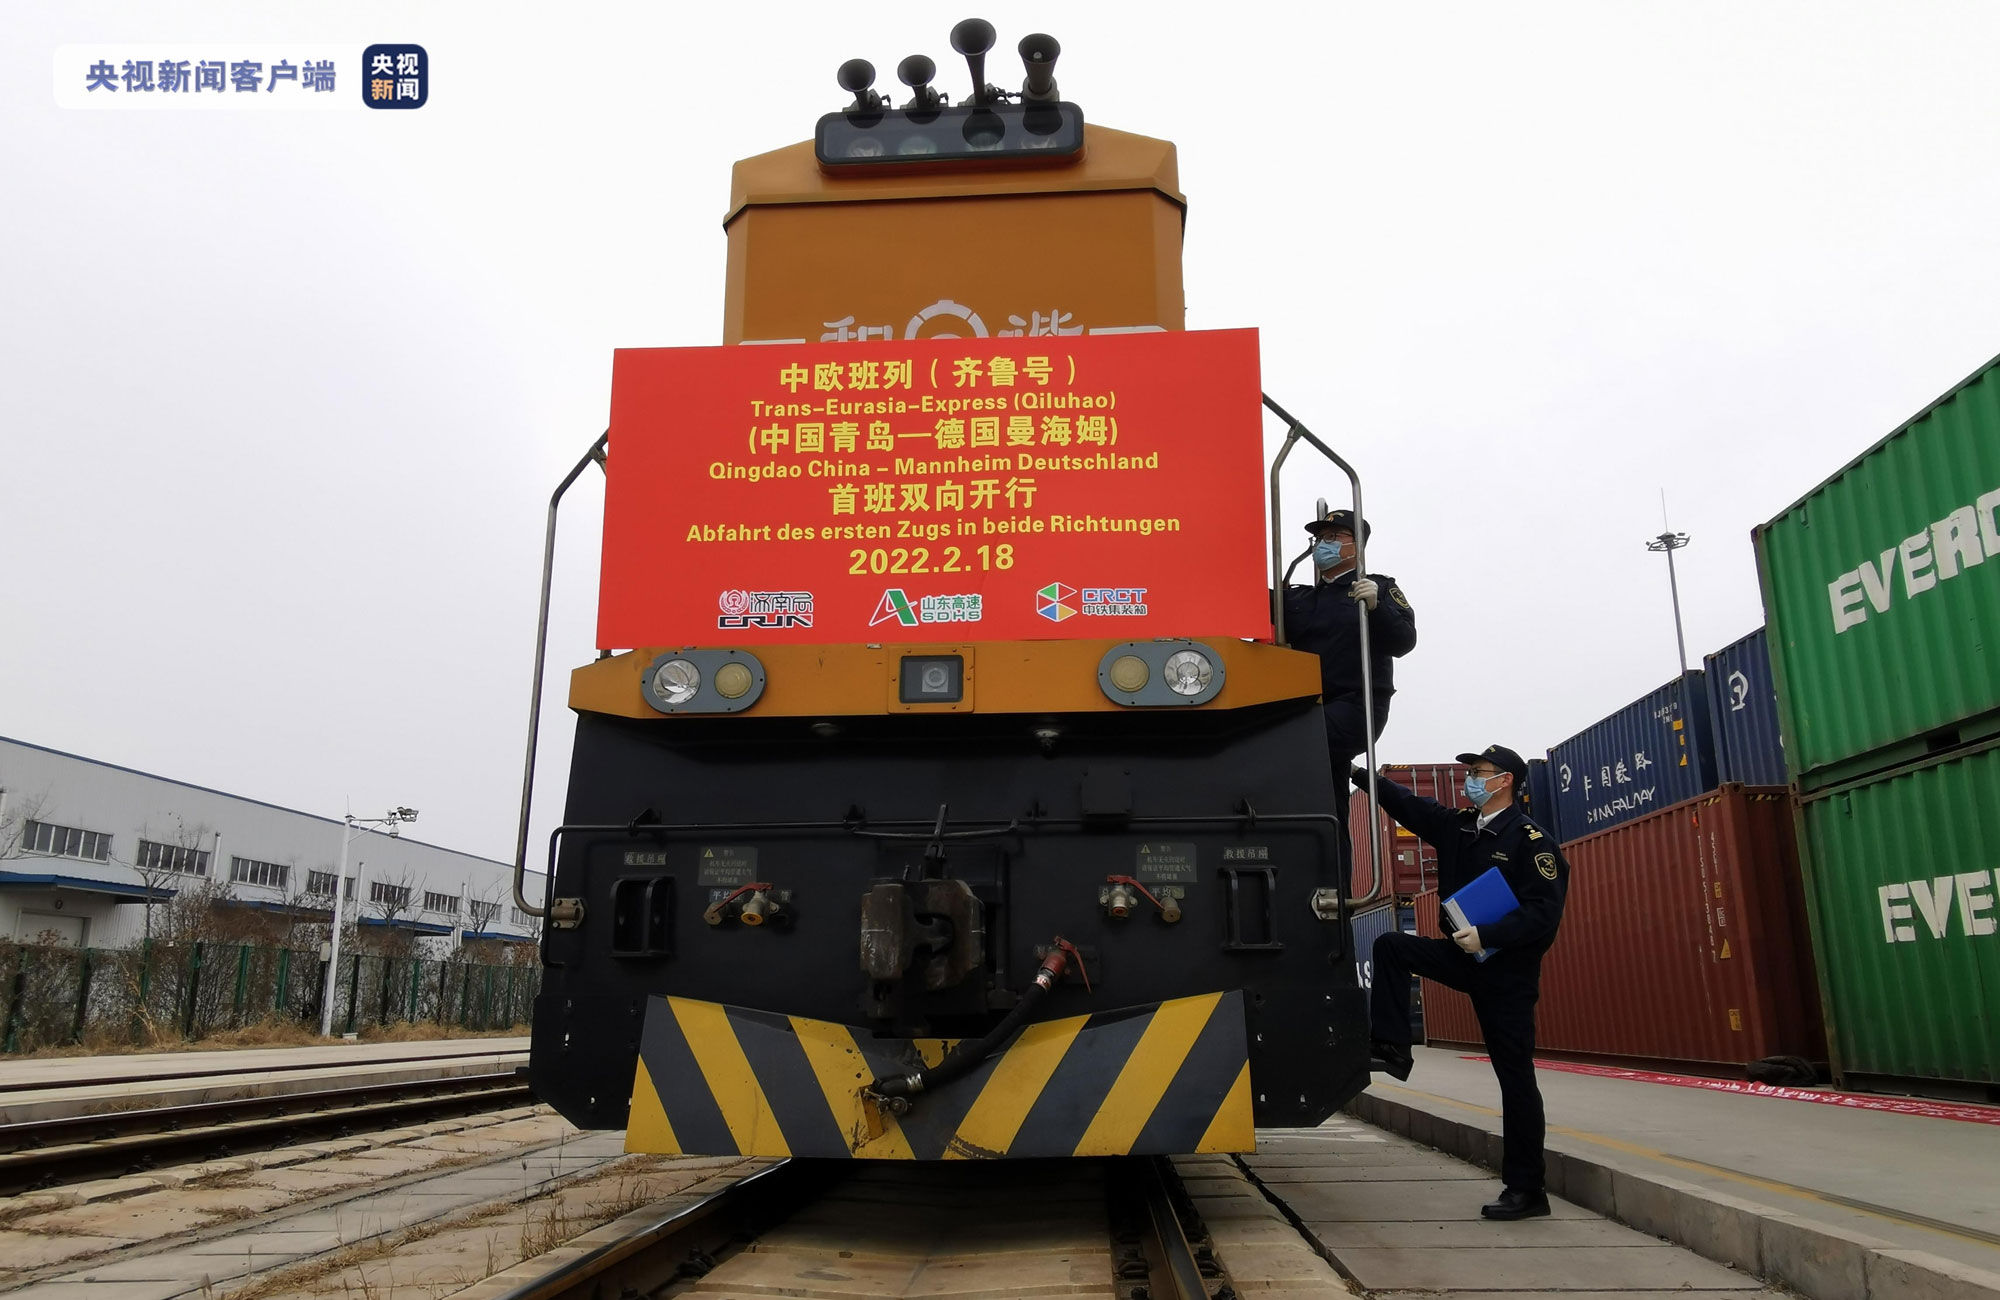 Am 17. Februar 2022 ist der erste Güterzug von Qingdao nach Mannheim gestartet, am 18. Februar 2022 wurde in Qingdao die Abfahrt des Güterzugs nach Mannheim gefeiert. Damit fiel der Startschuss für eine neu eingerichtete Güterzugverbindung zwischen den beiden Partnerstädten. Foto: Stadt Mannheim